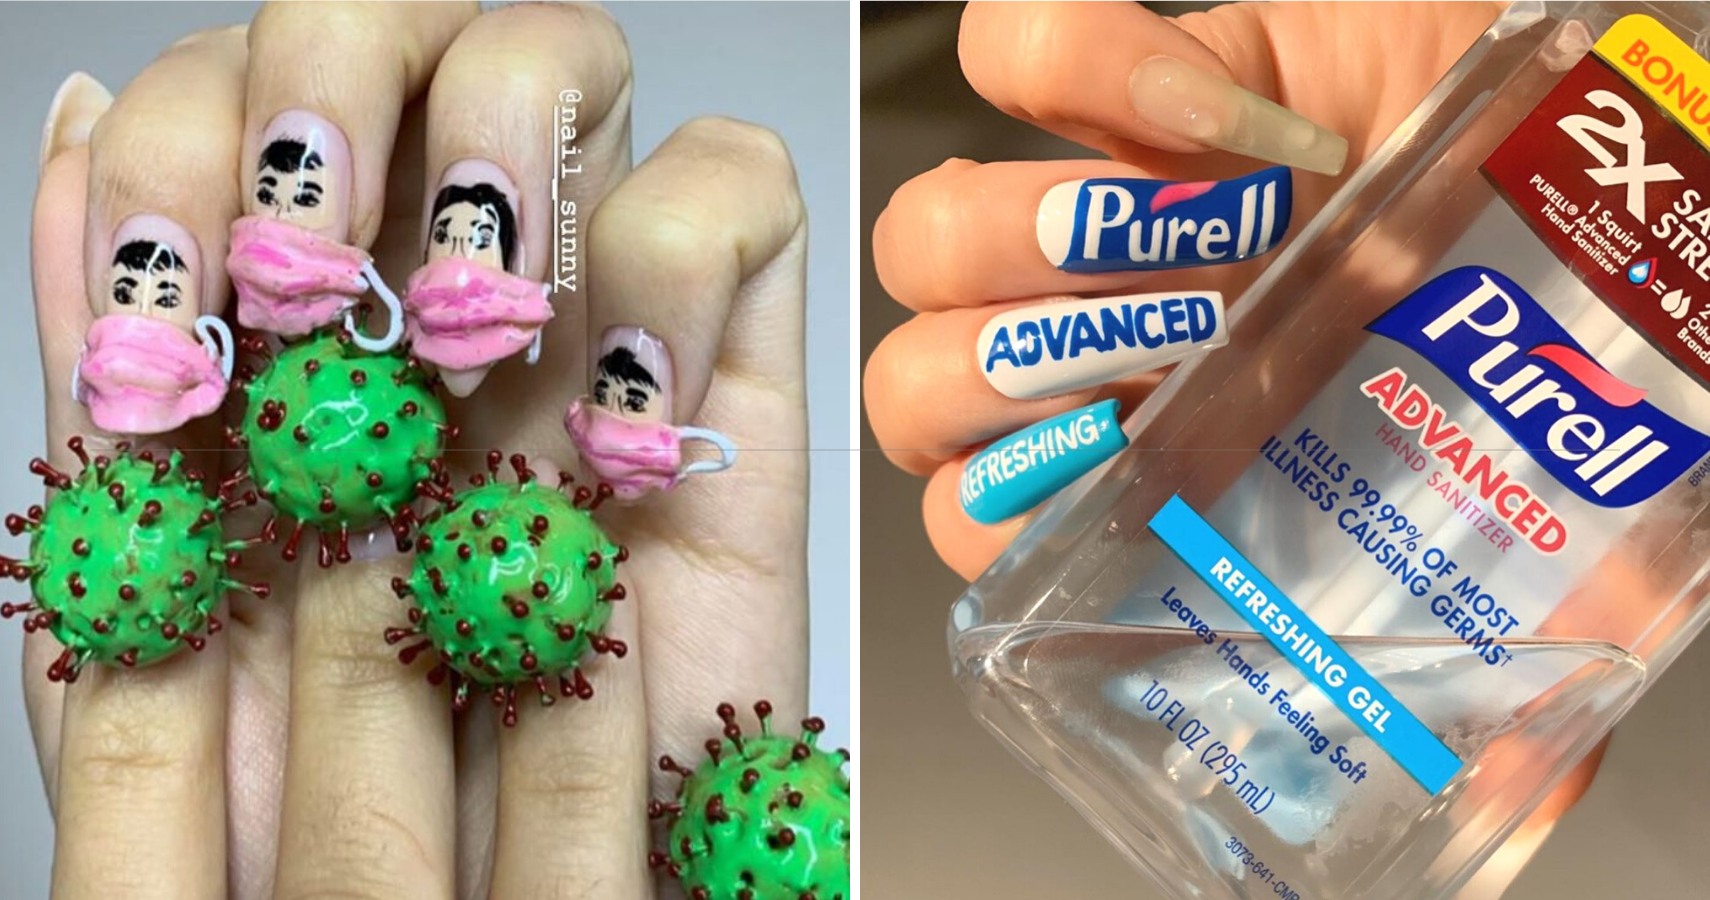 1. "Coronavirus-Inspired Nail Art Takes Over Social Media" - wide 7